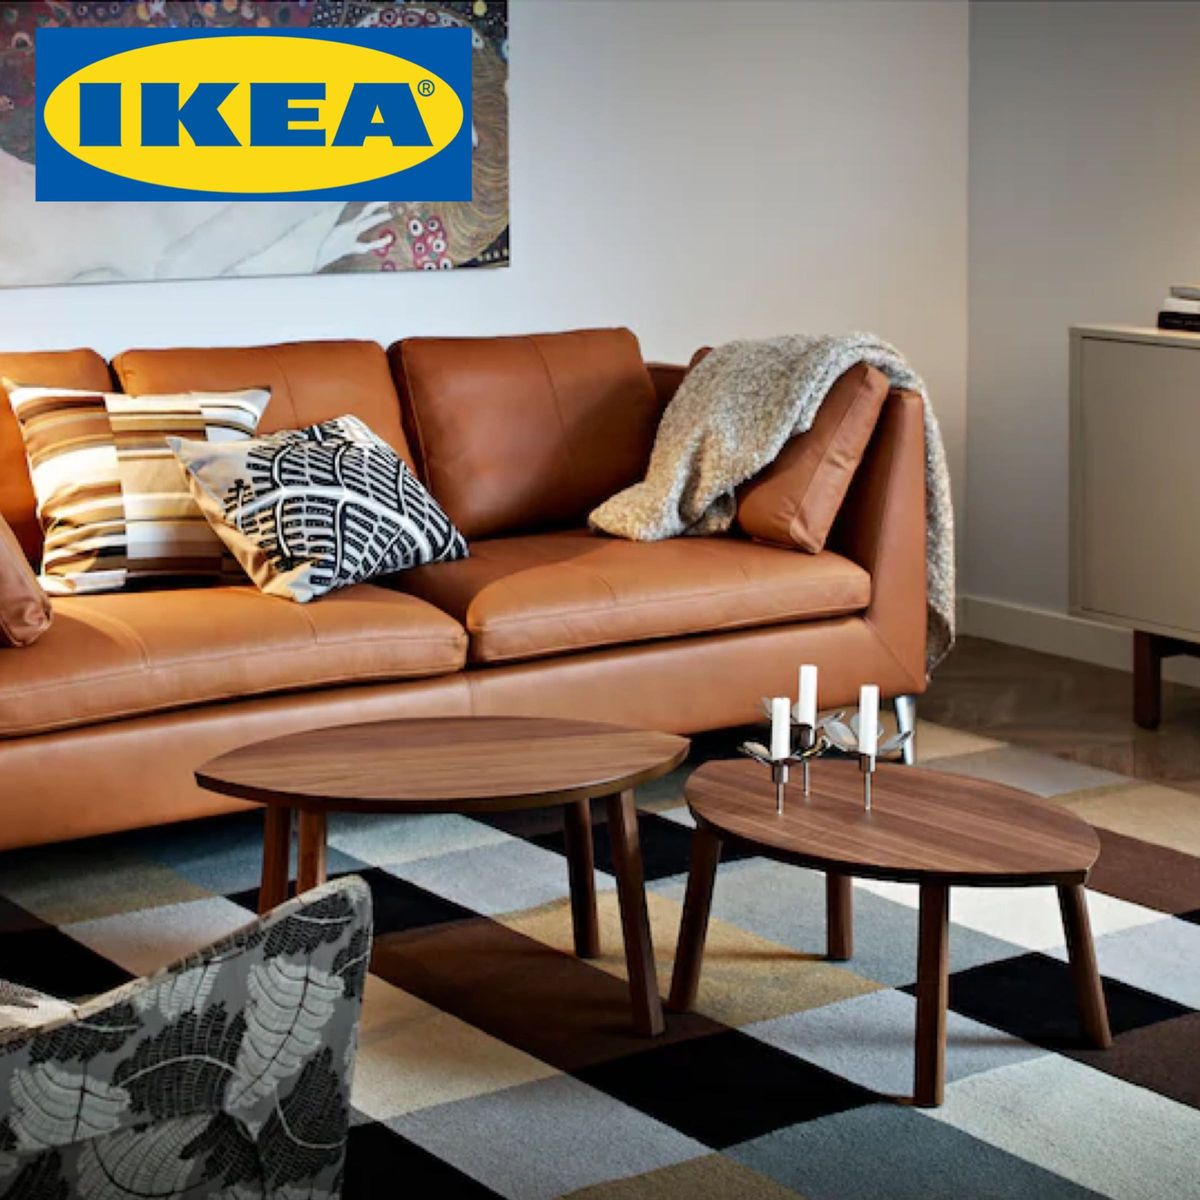 IKEA イケア ストックホルム テーブル ウォールナット 木製 ウッド